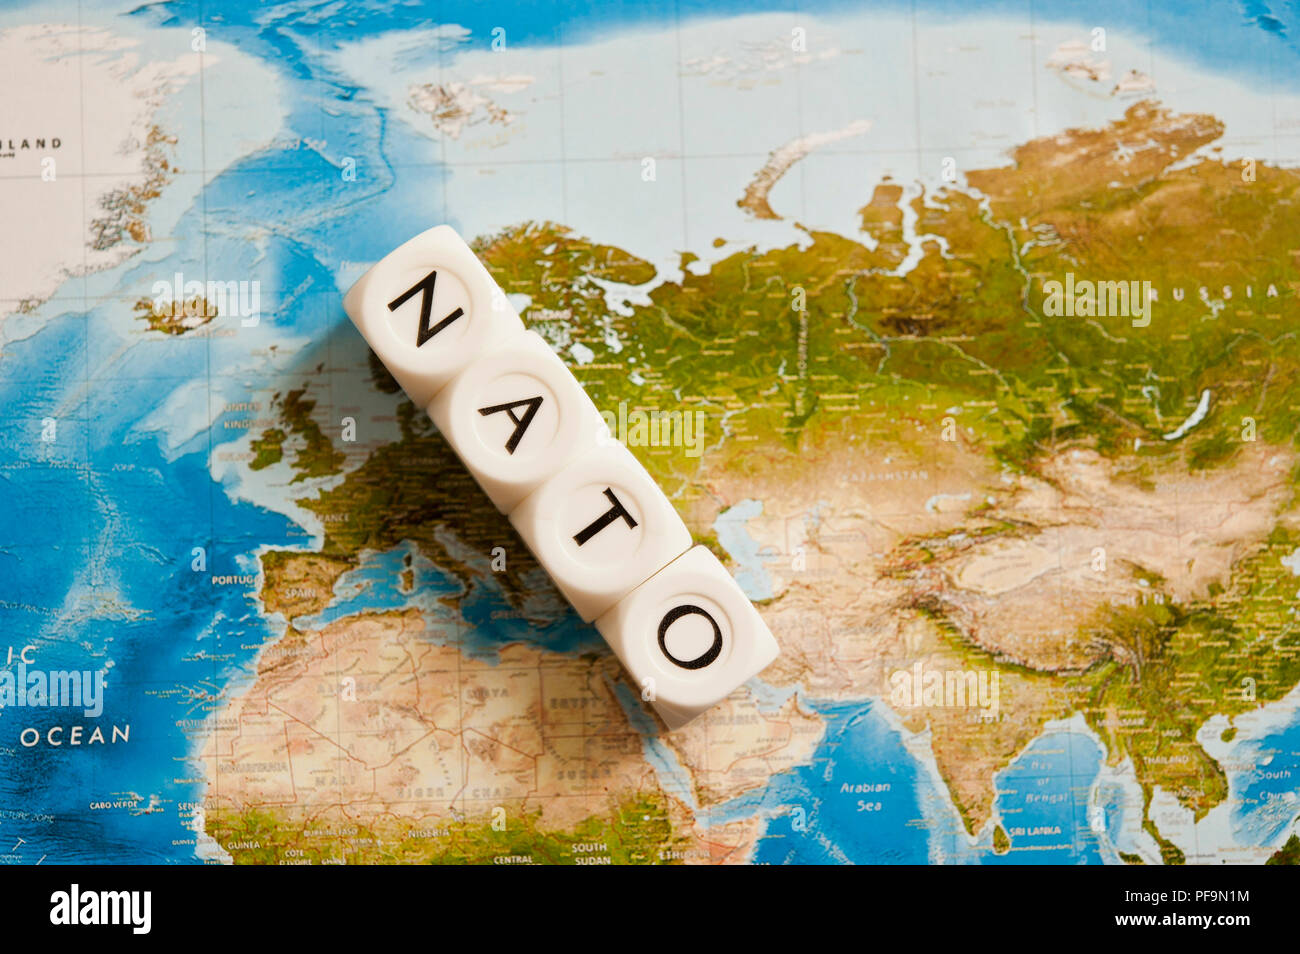 La NATO scritto con dadi su una mappa del mondo, concetto per l'Organizzazione del Trattato del Nord Atlantico espandendo i suoi membri Foto Stock